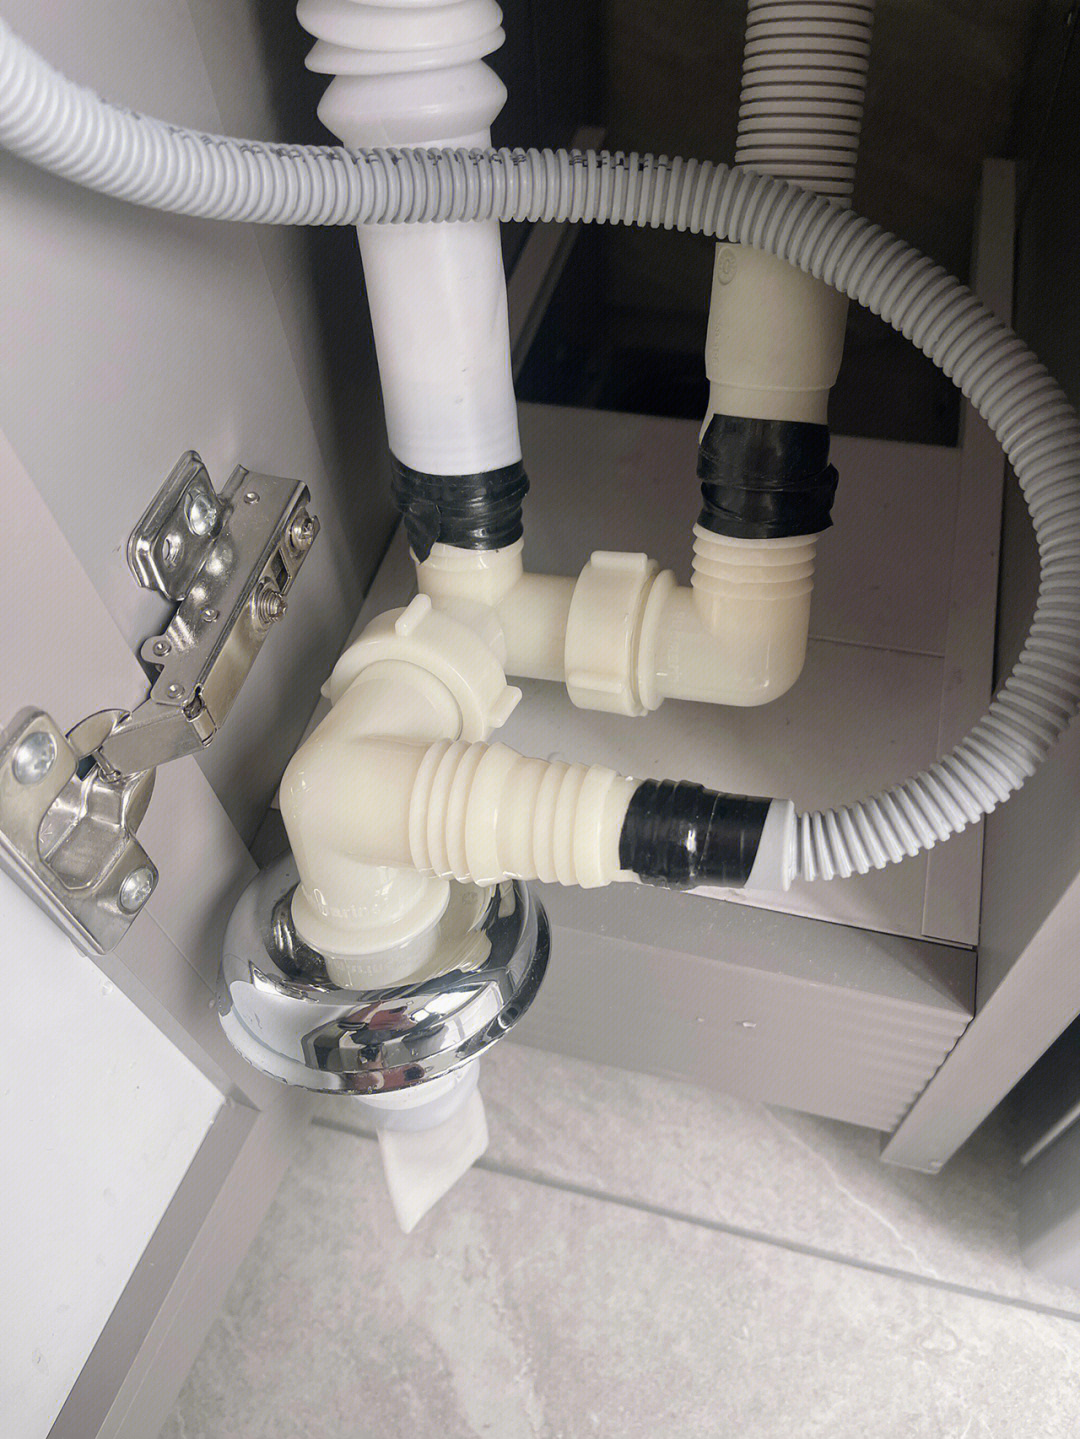 博世烘干机排水管安装图片